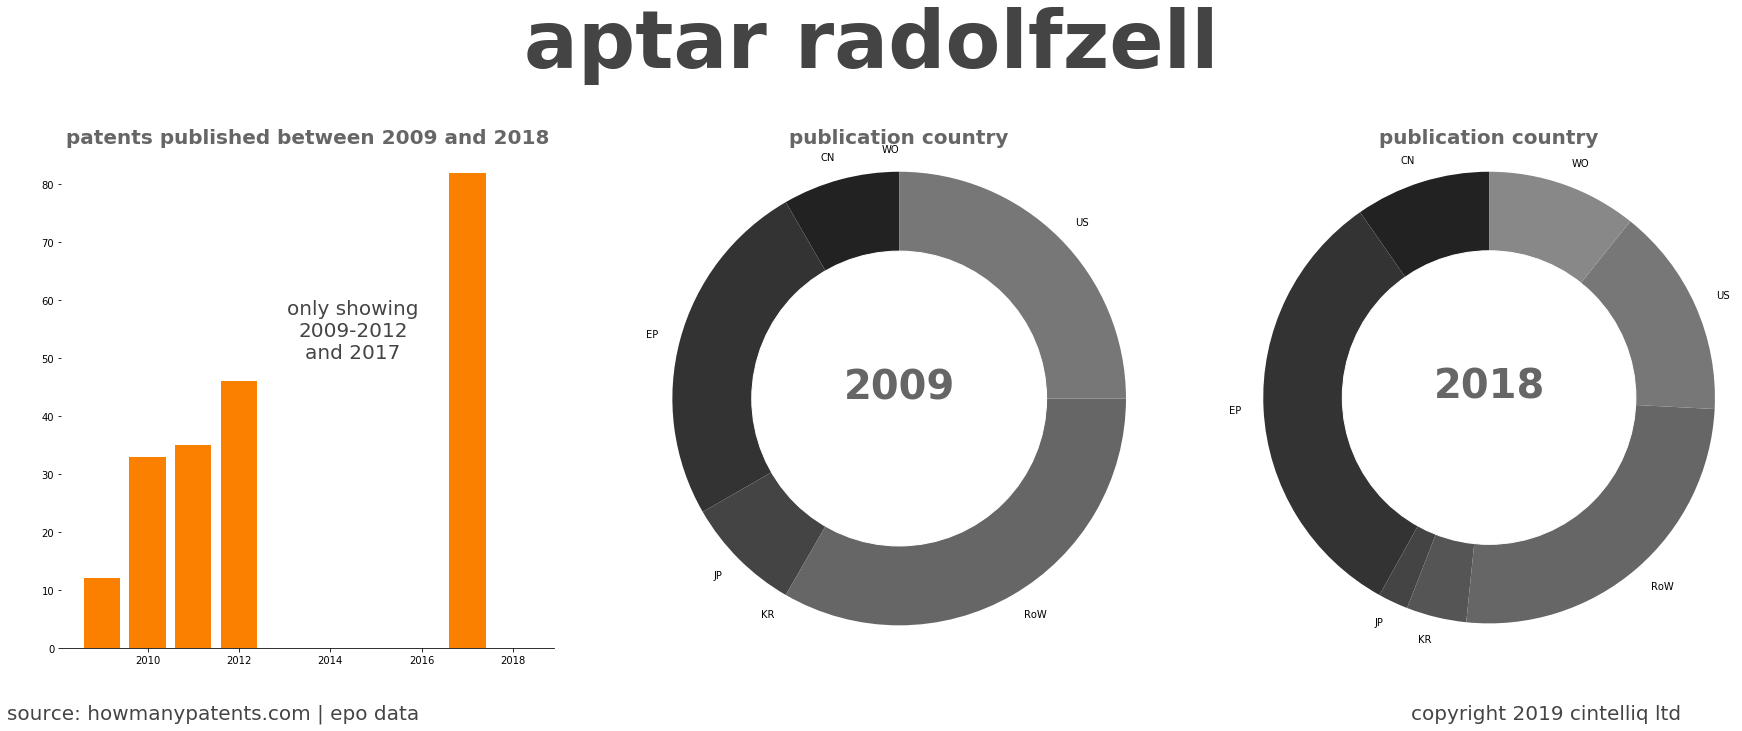 summary of patents for Aptar Radolfzell